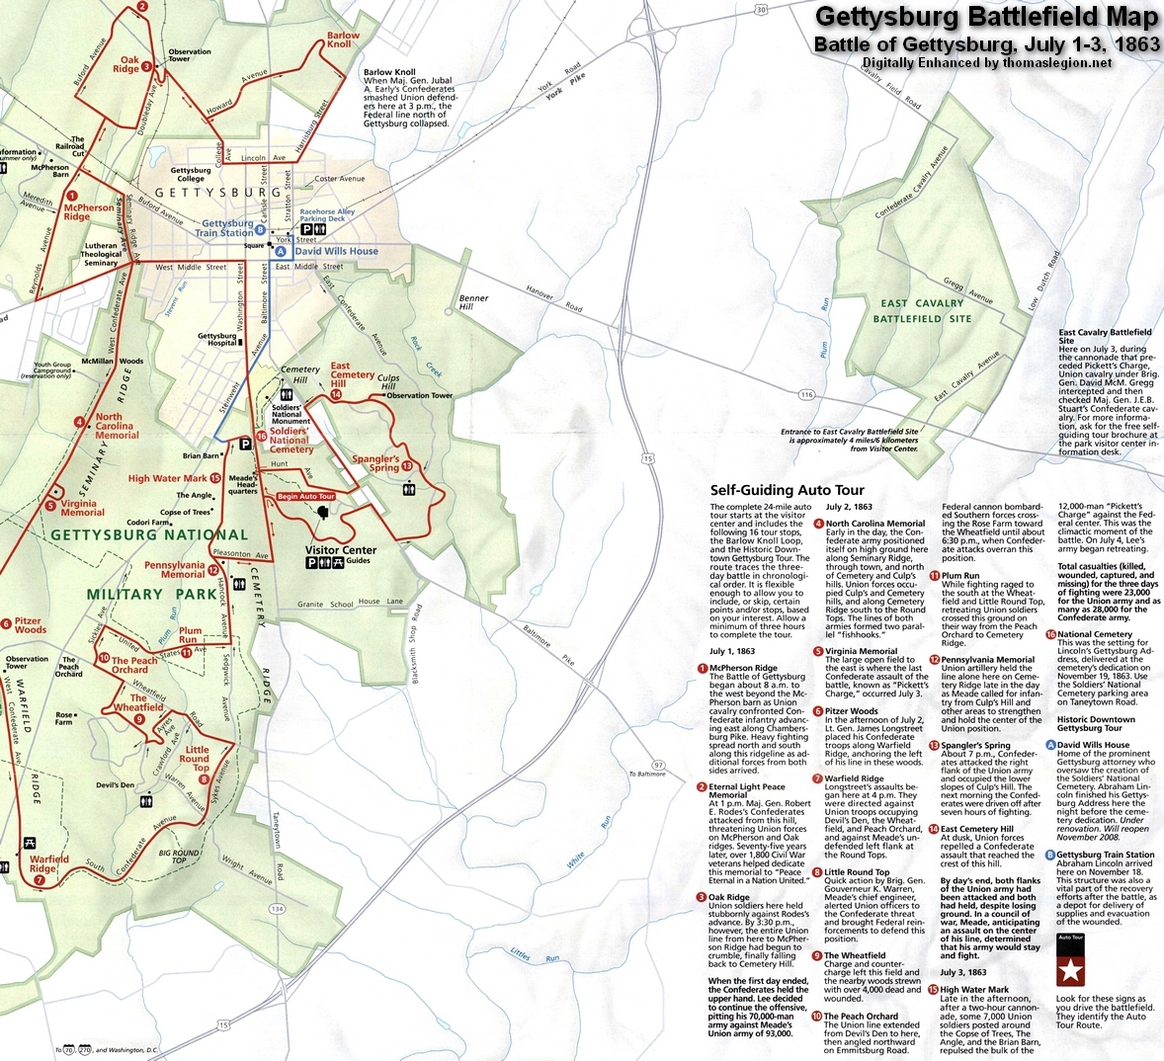 Spangler's Spring and Battle of Gettysburg.jpg